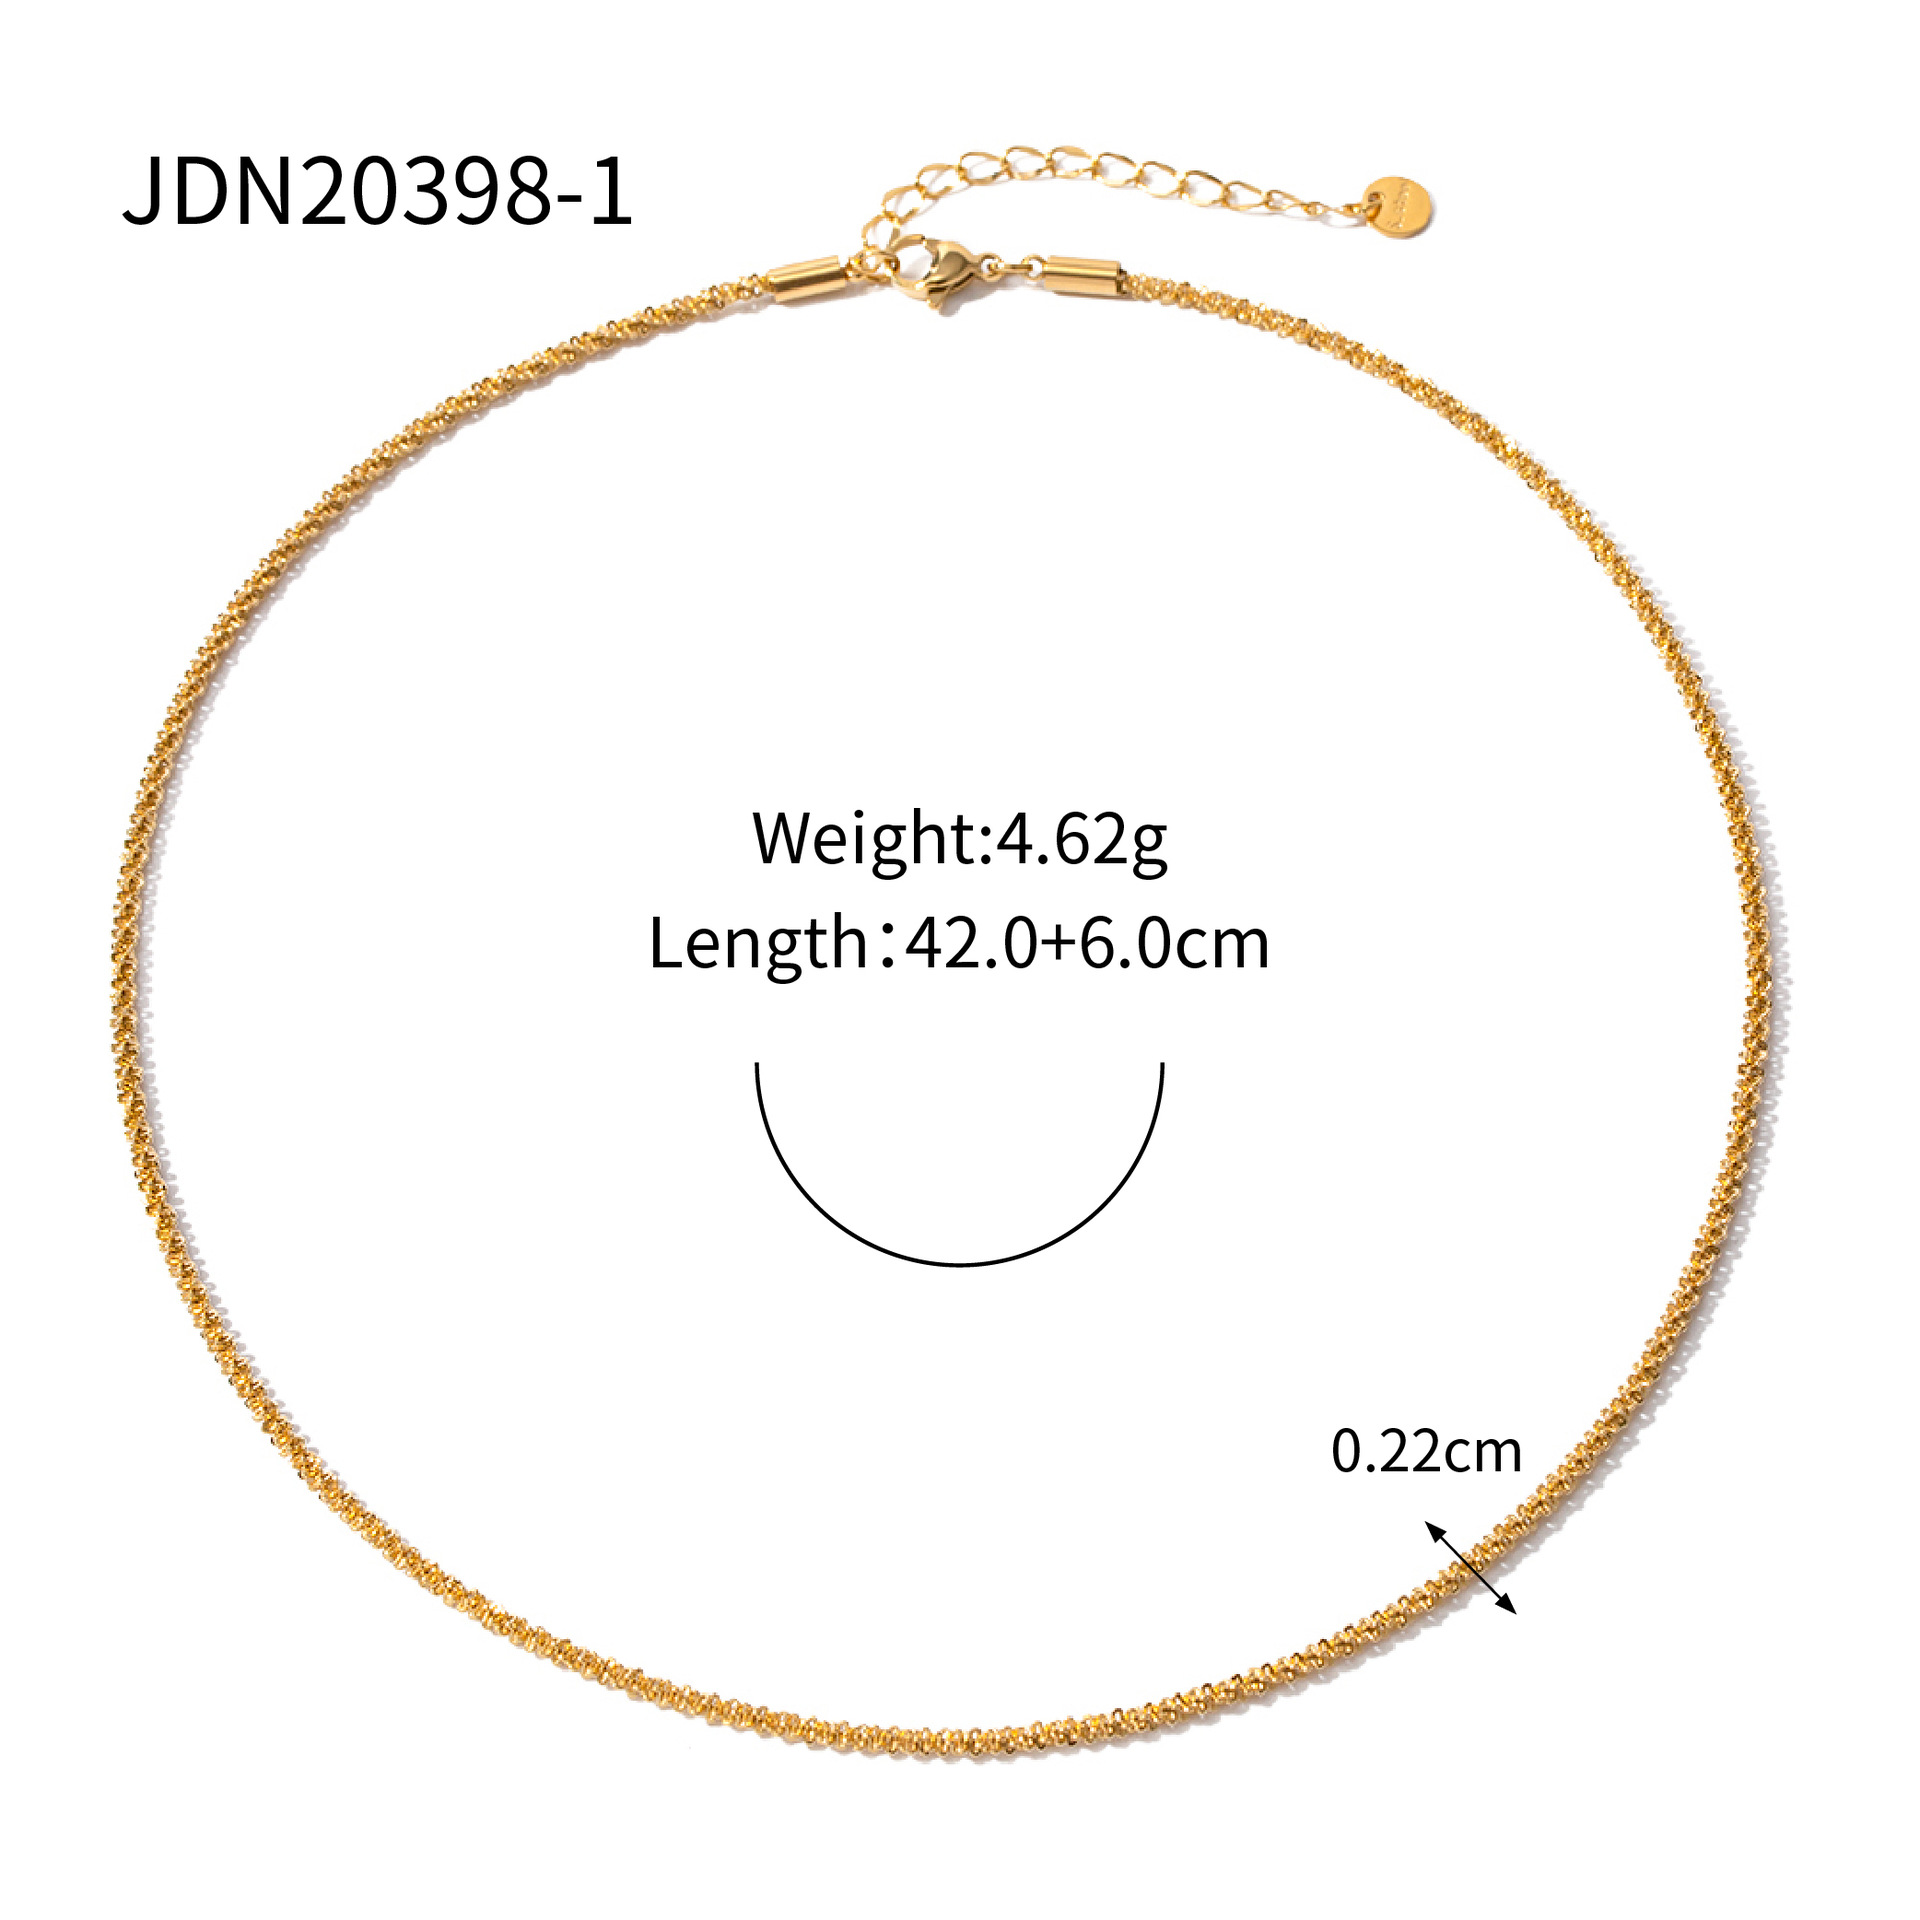 JDN20398-1